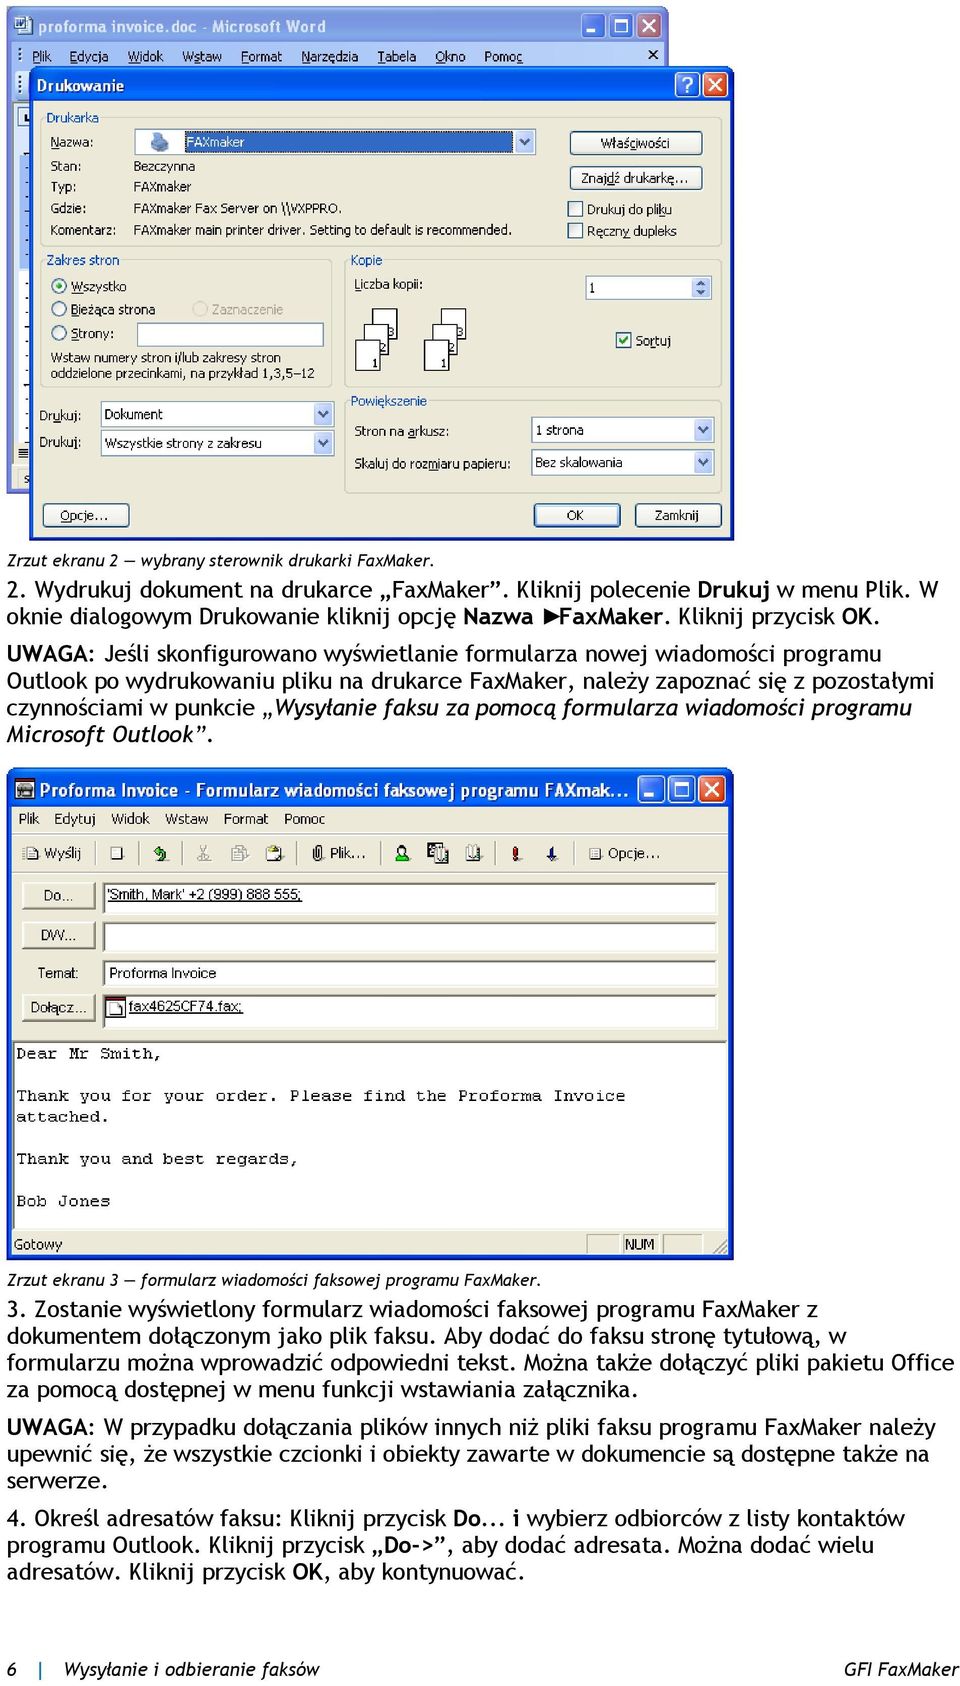 UWAGA: Jeśli skonfigurowano wyświetlanie formularza nowej wiadomości programu Outlook po wydrukowaniu pliku na drukarce FaxMaker, należy zapoznać się z pozostałymi czynnościami w punkcie Wysyłanie